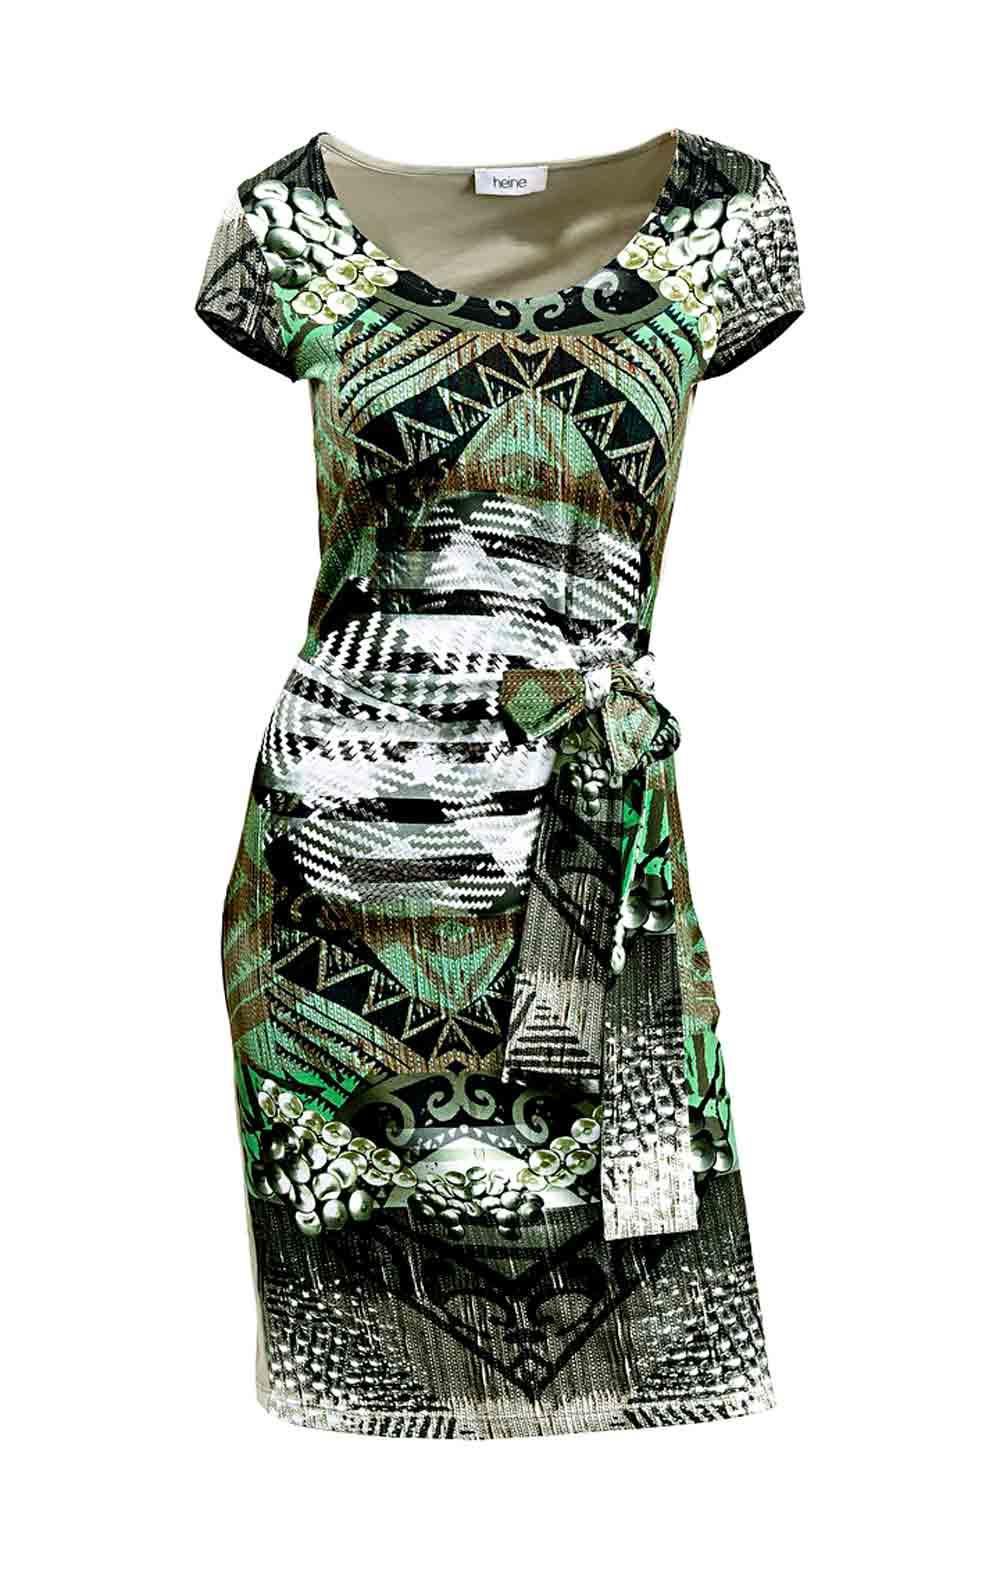 Kleid mit Bindegürtel grün-bunt  Kleider  Outlet Mode-Shop